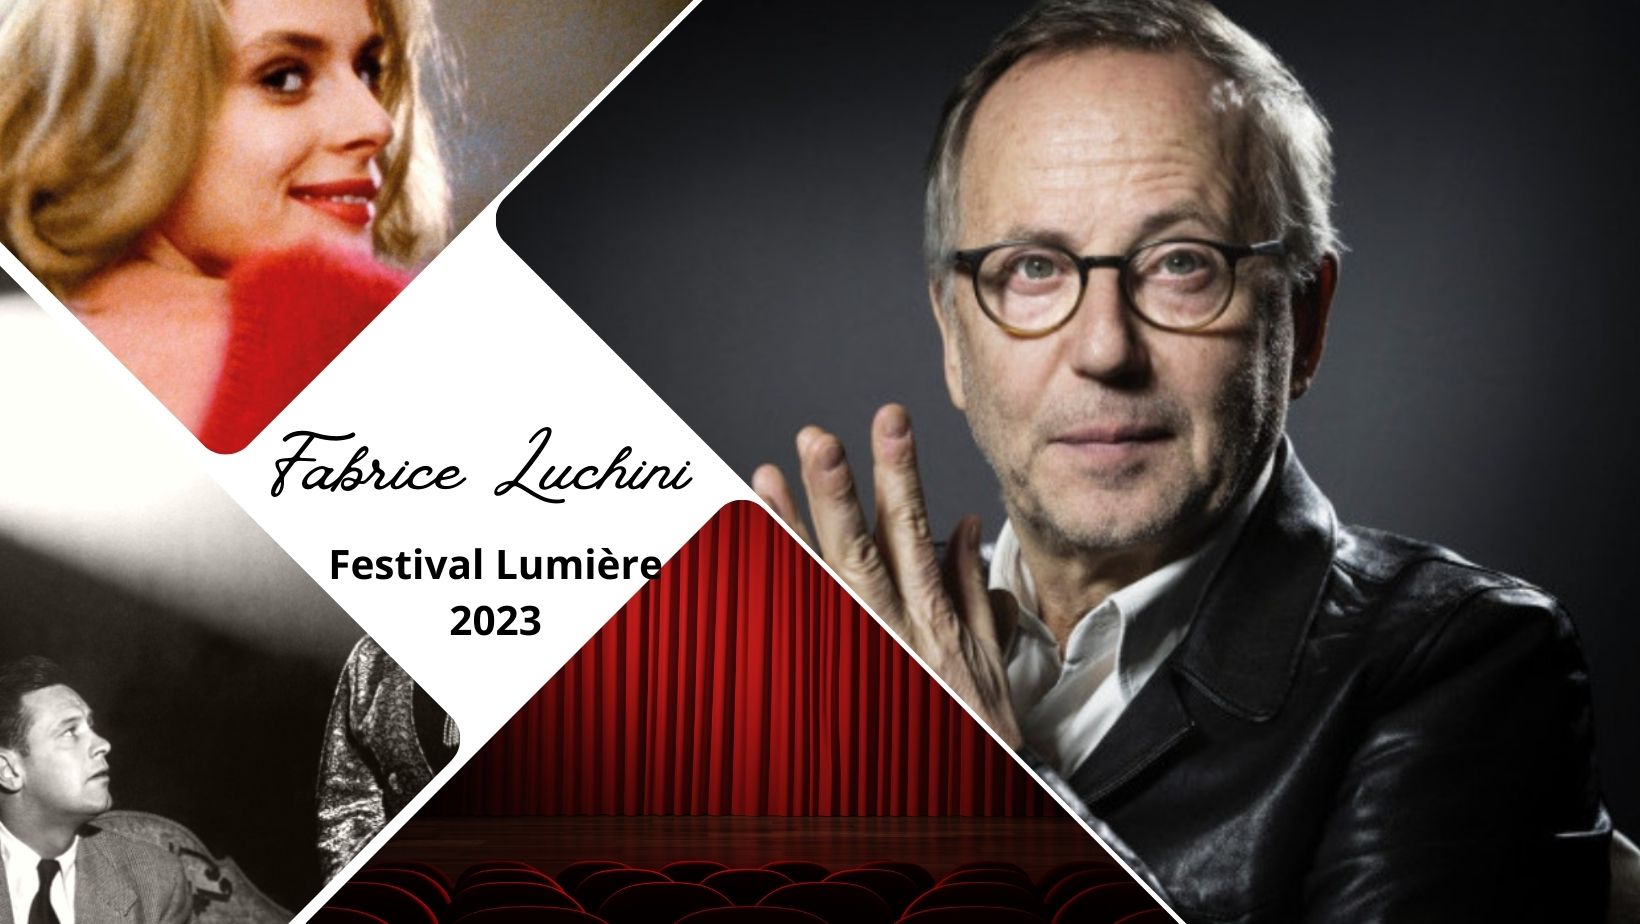 Festival Lumière 2023 : Fabrice Luchini invité spécial de l'ouverture